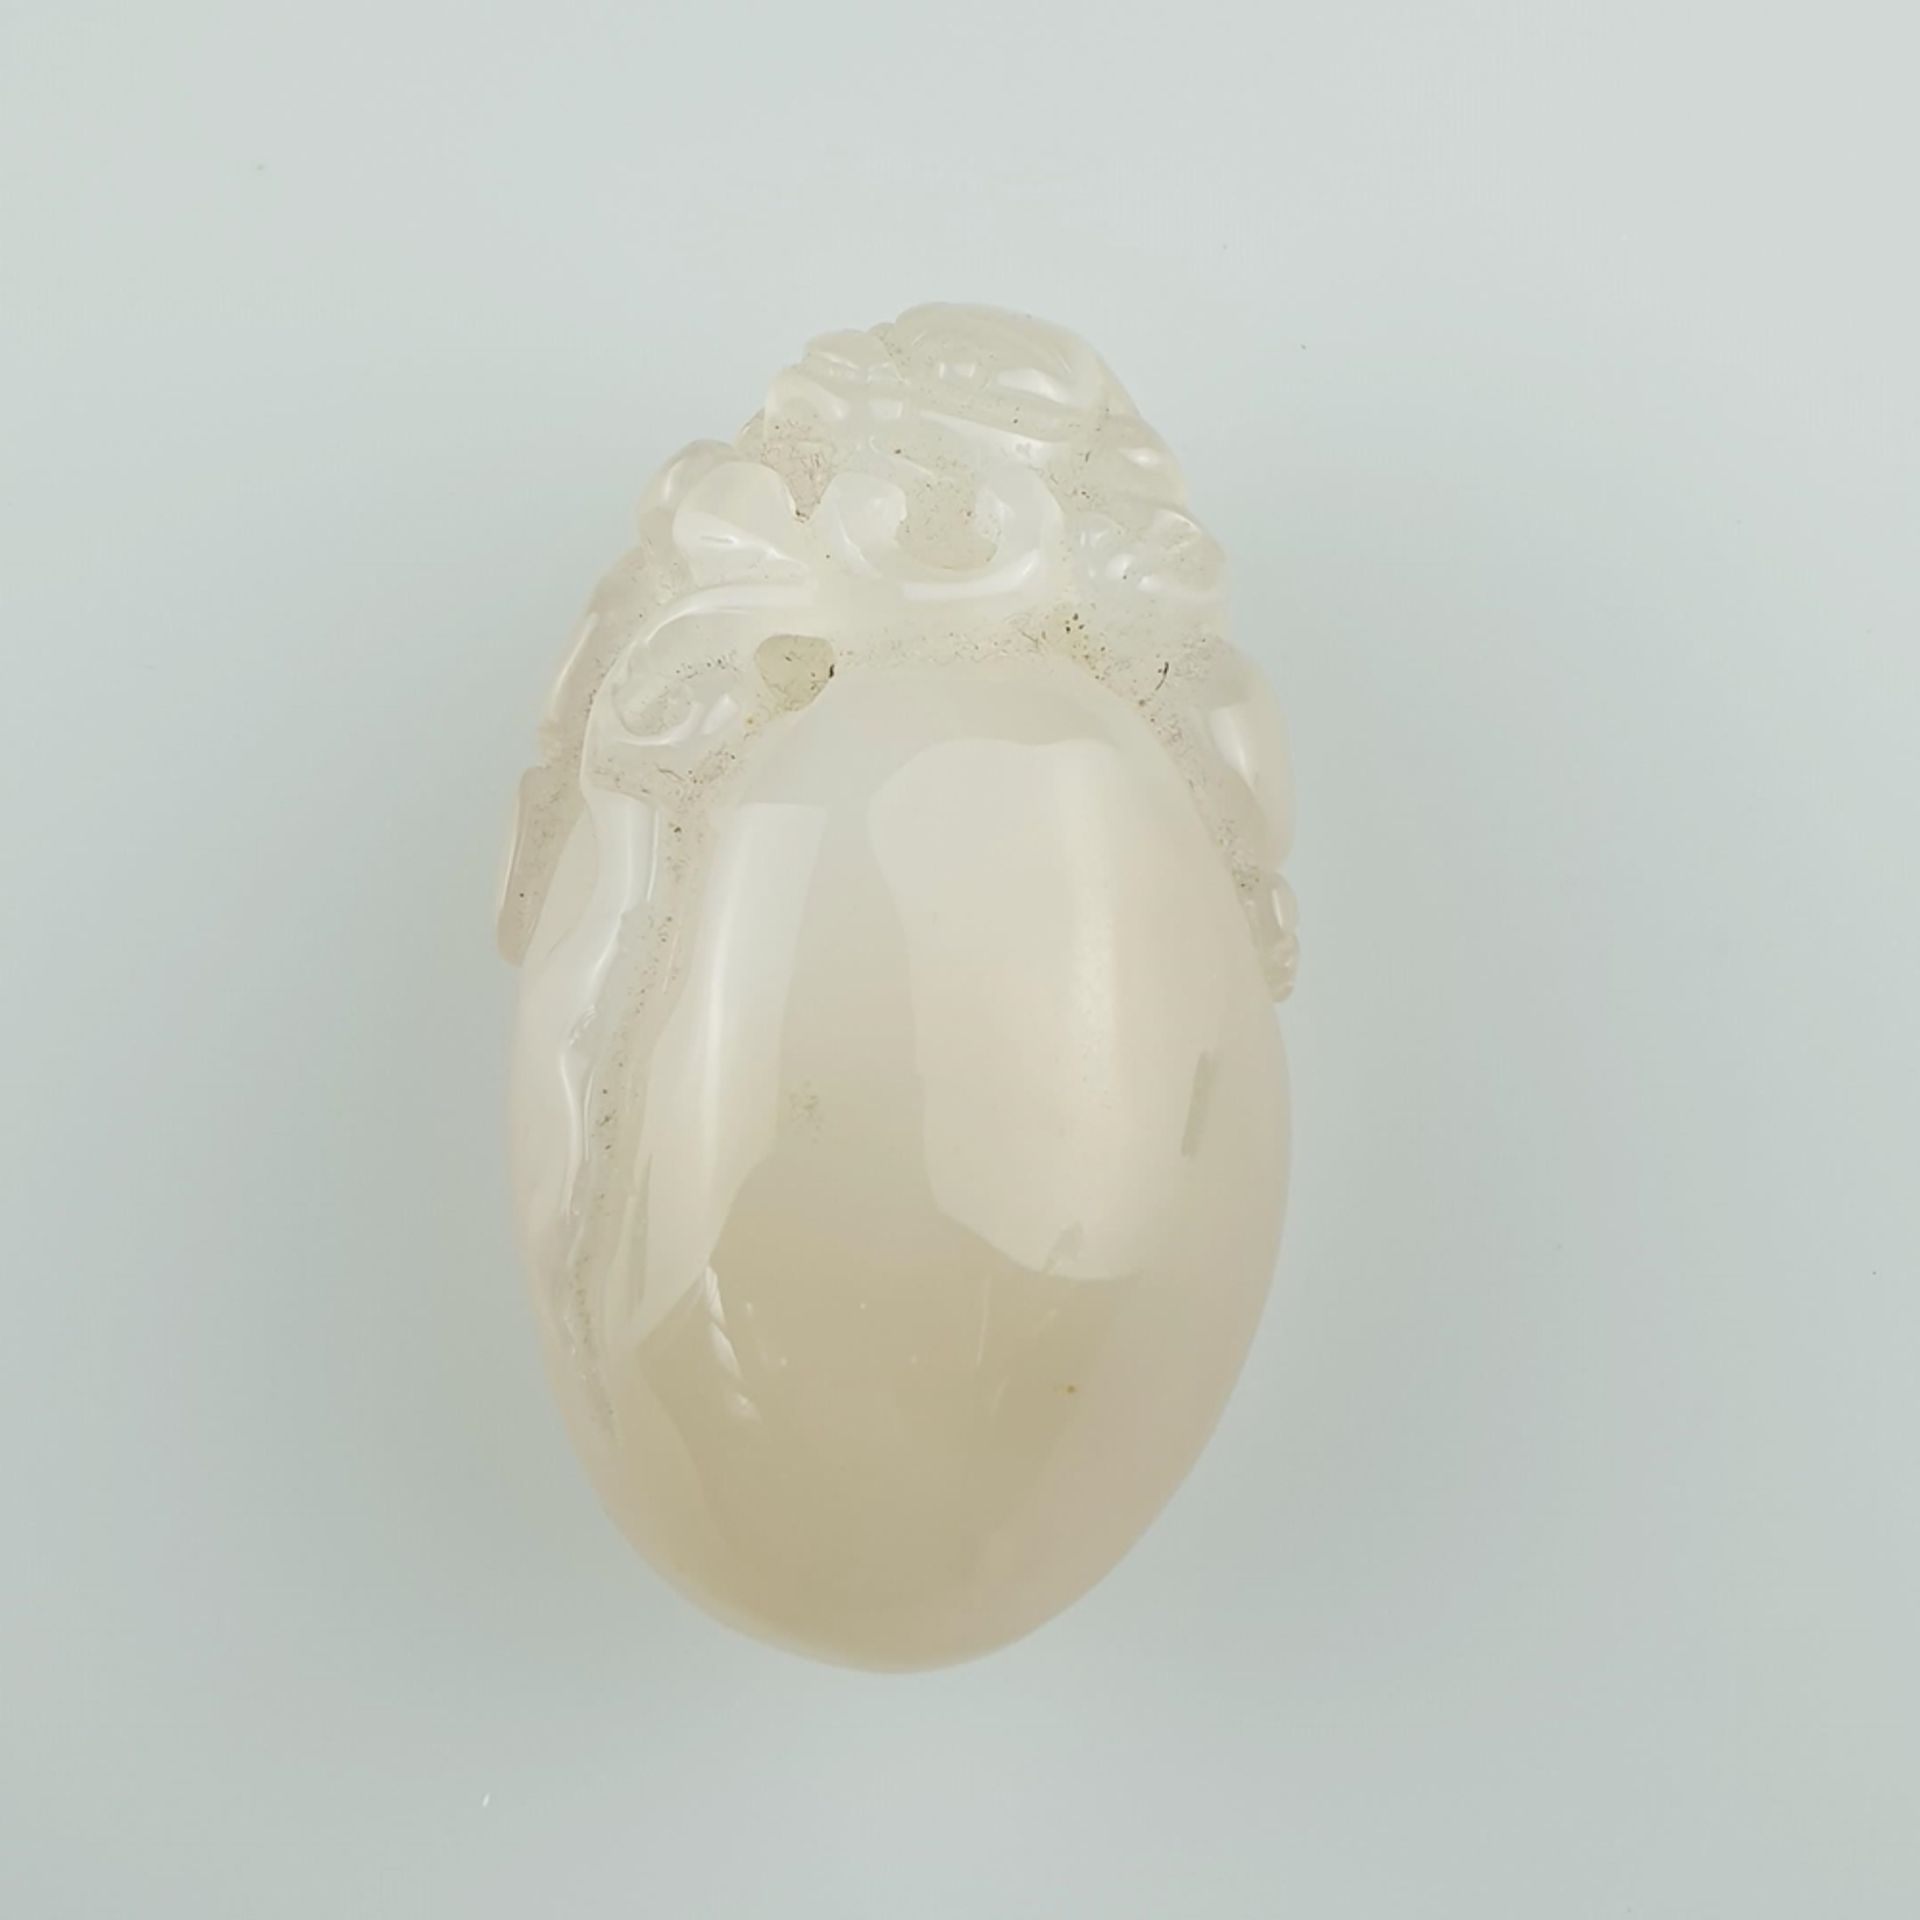 Jadeschnitzerei - China, gräulich weiße Jade, feinpoliert, in Kieselform mit durchbrochen